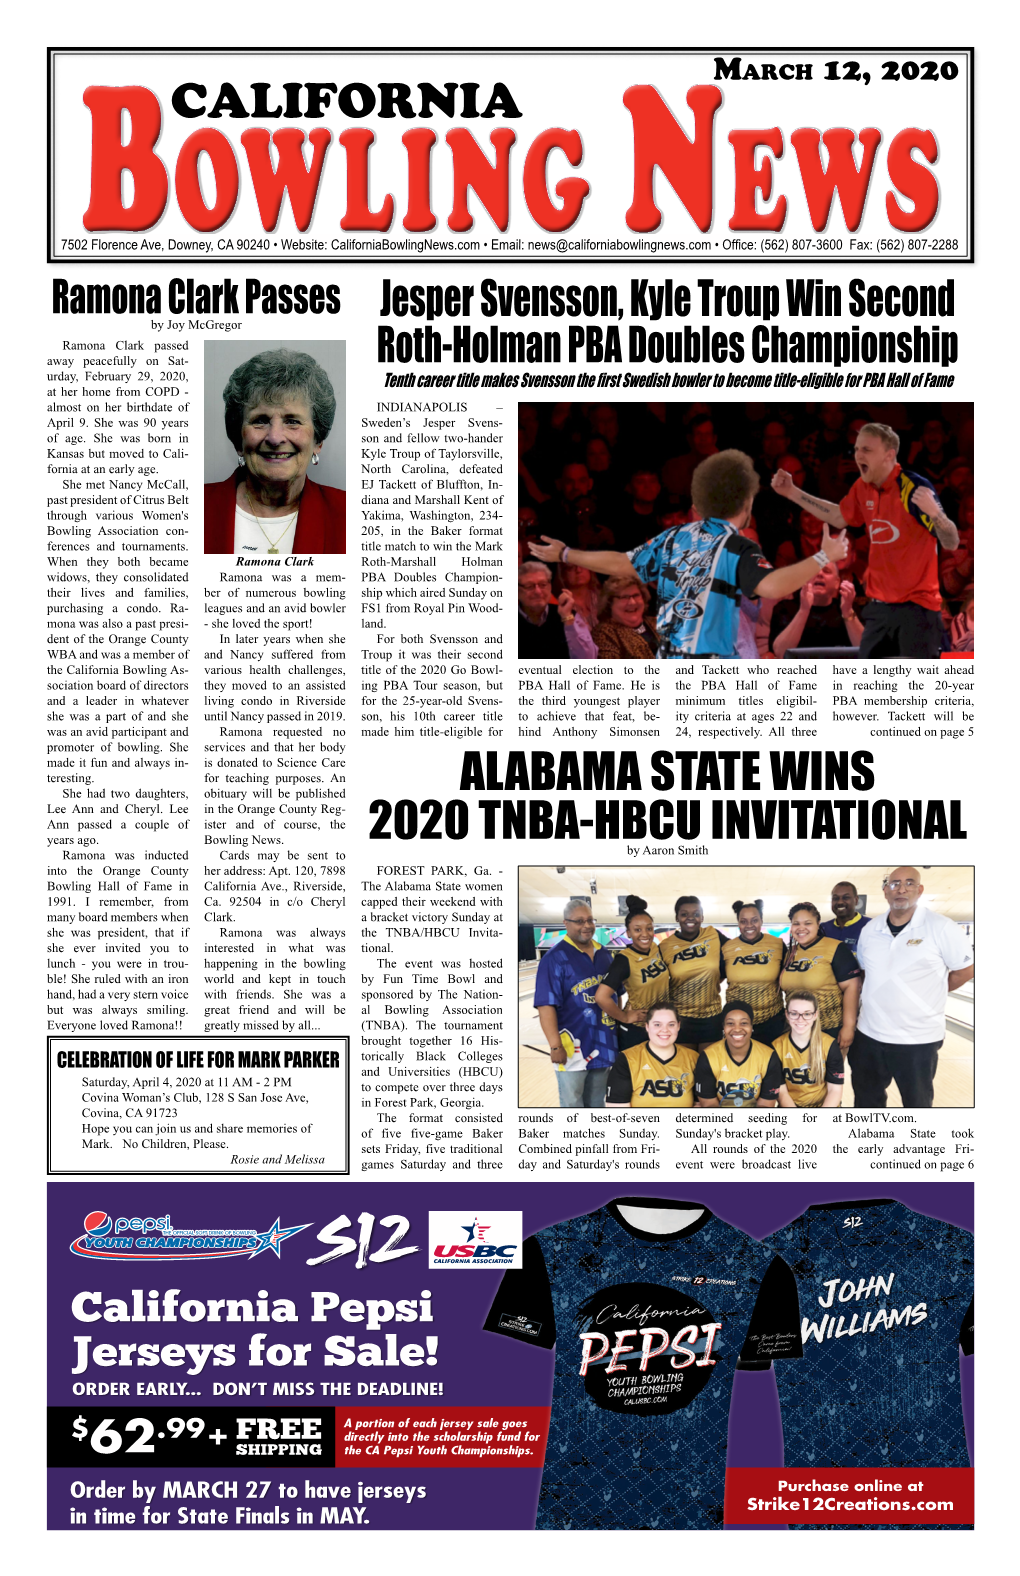 Alabama State Wins 2020 Tnba-Hbcu Invitational